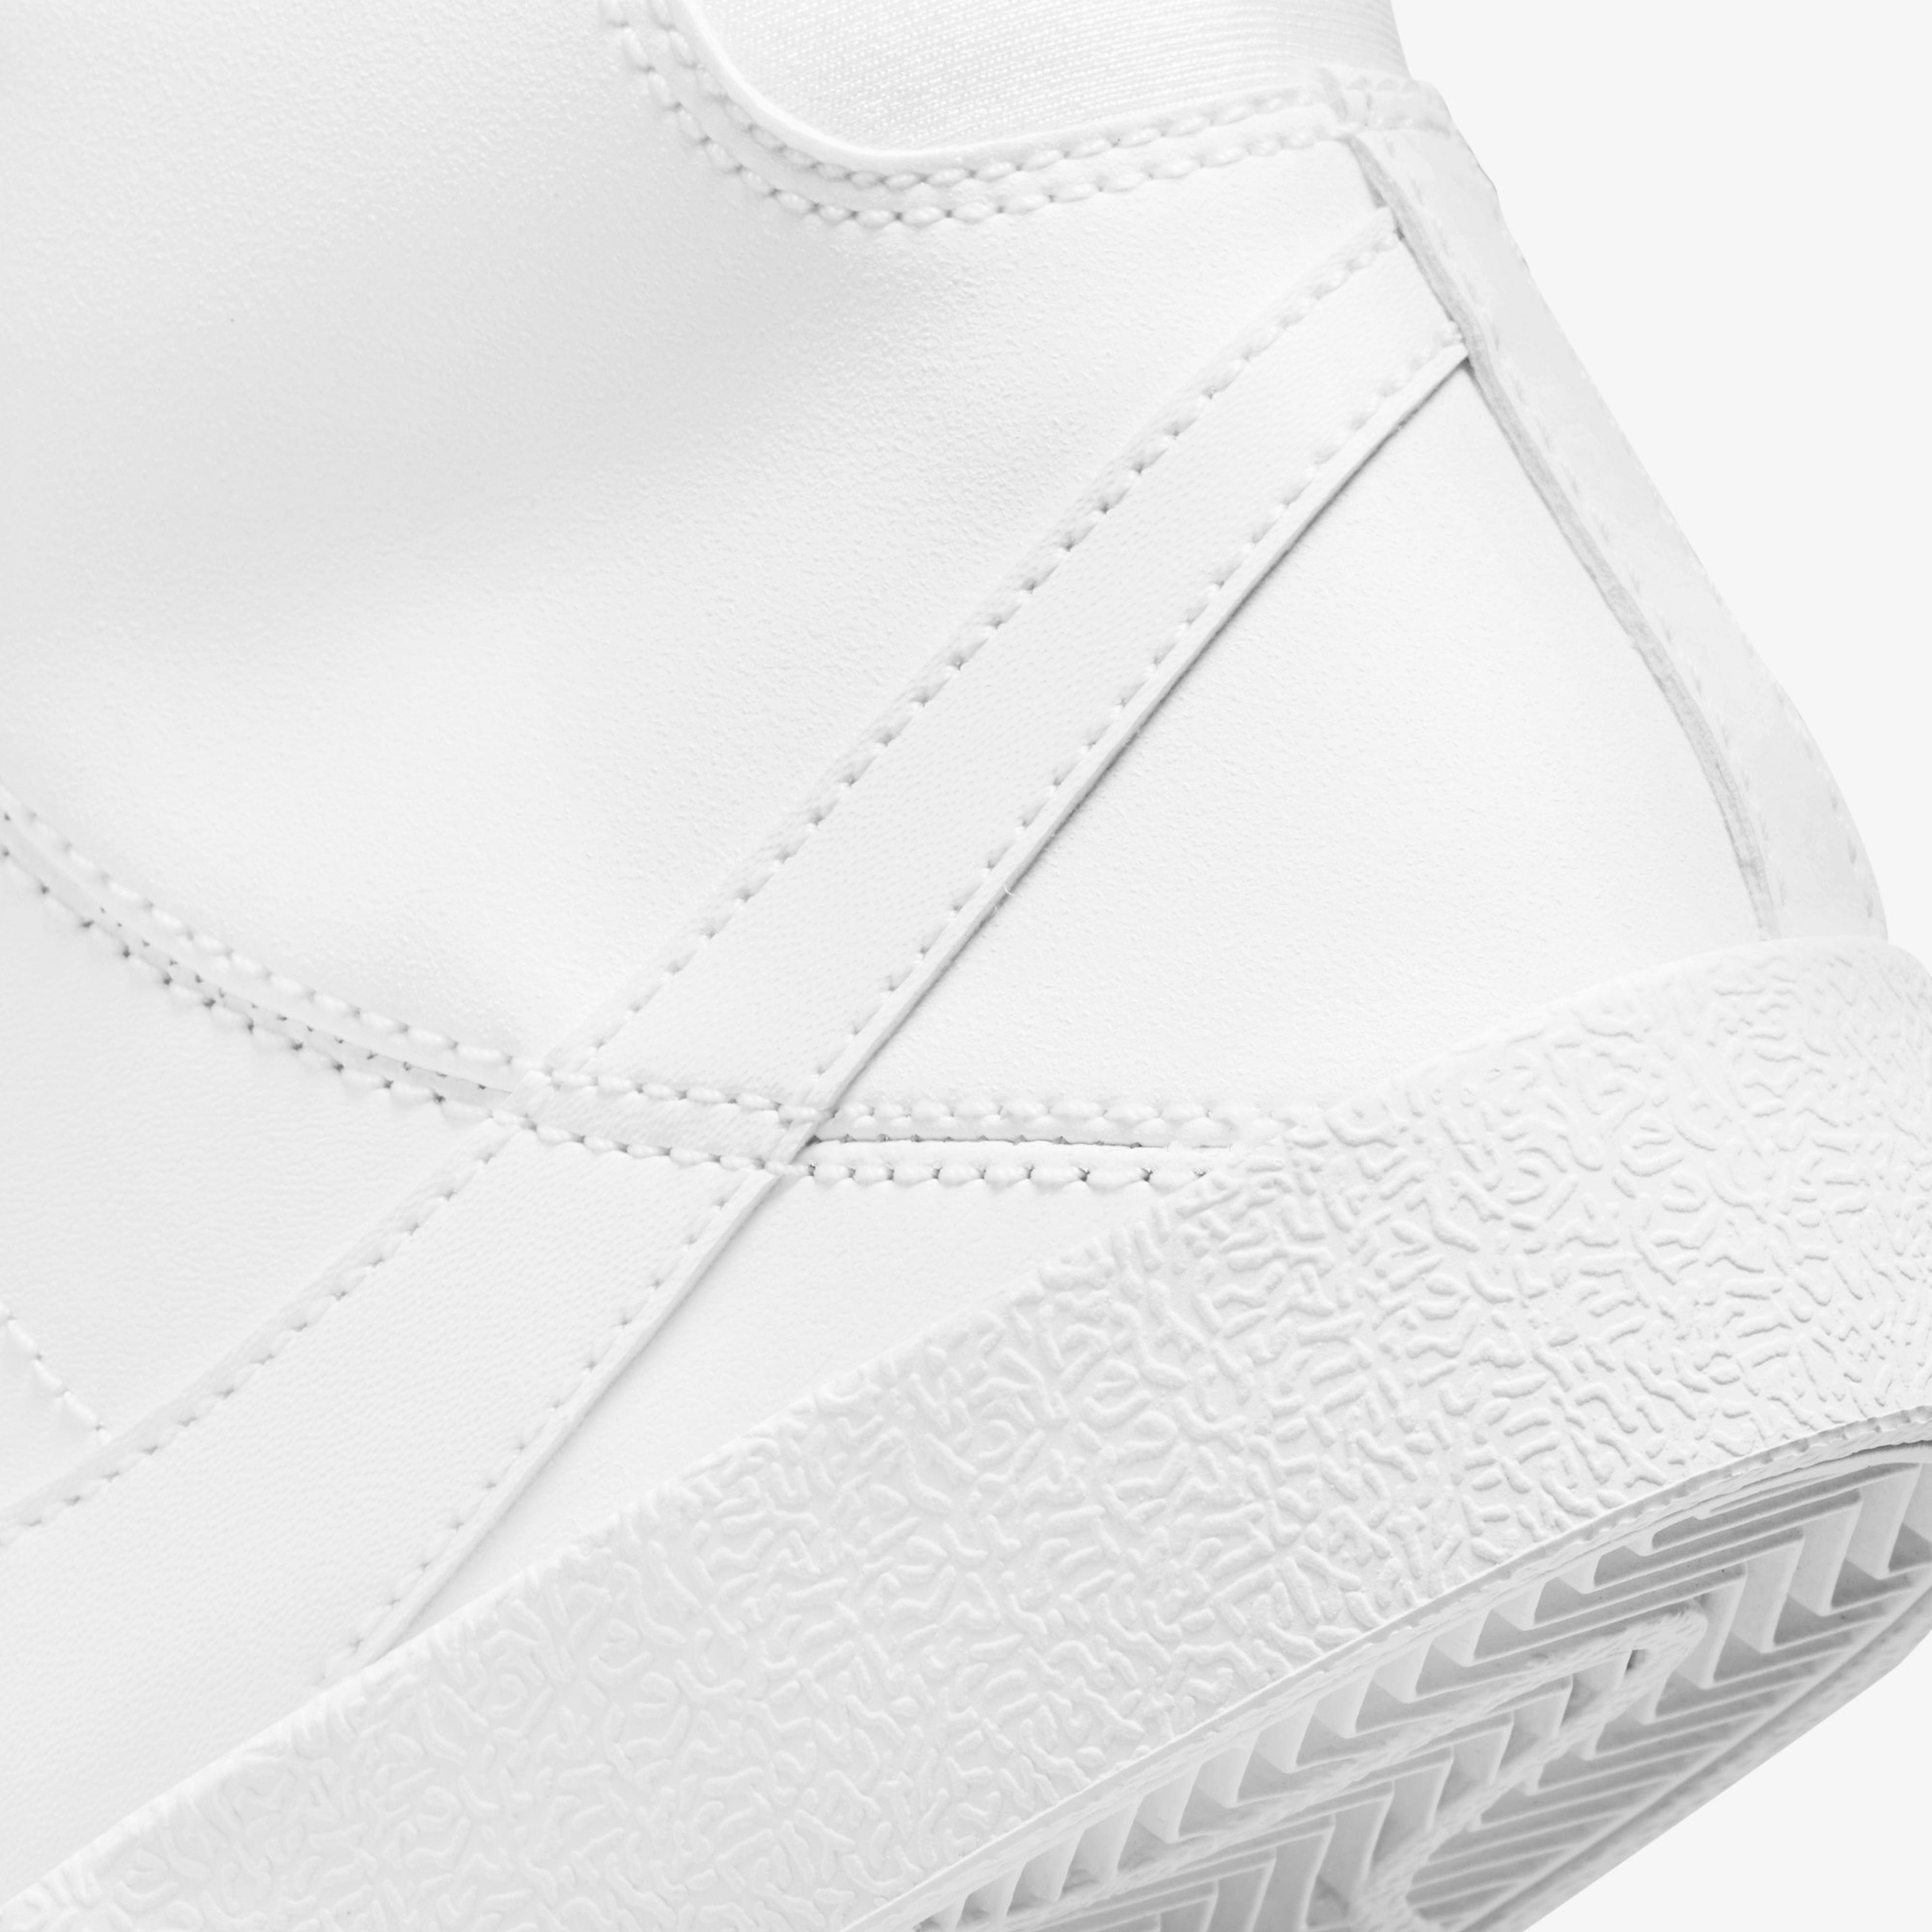 Nike Blazer Mid '77 SE Dance Çocuk Beyaz Spor Ayakkabı